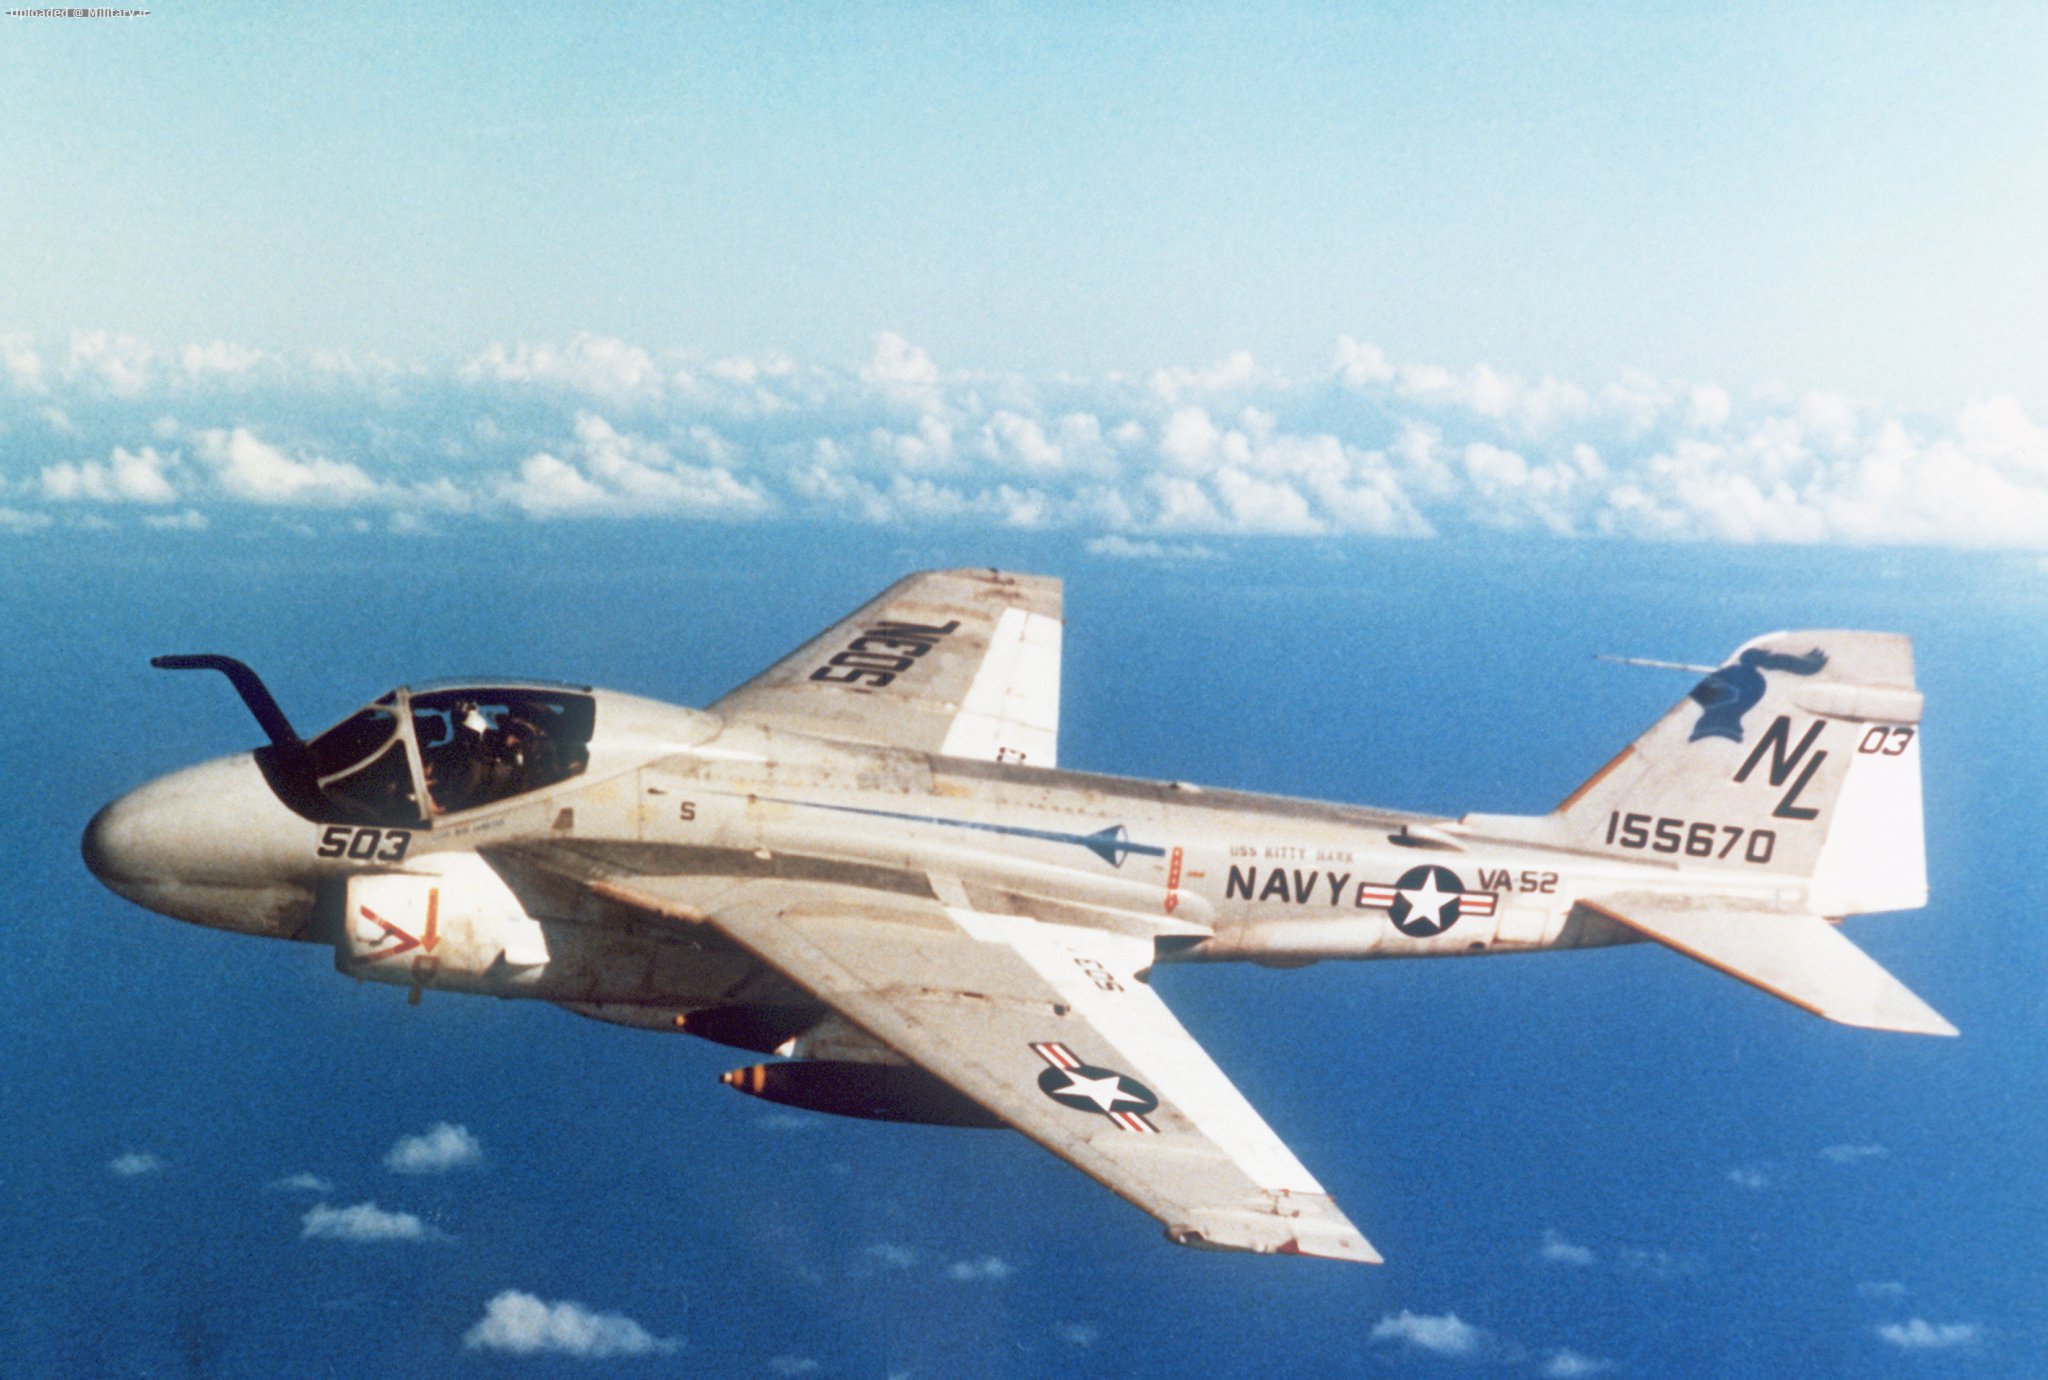 Grumman_A-6E_Intruder_of_VA-52_in_flight